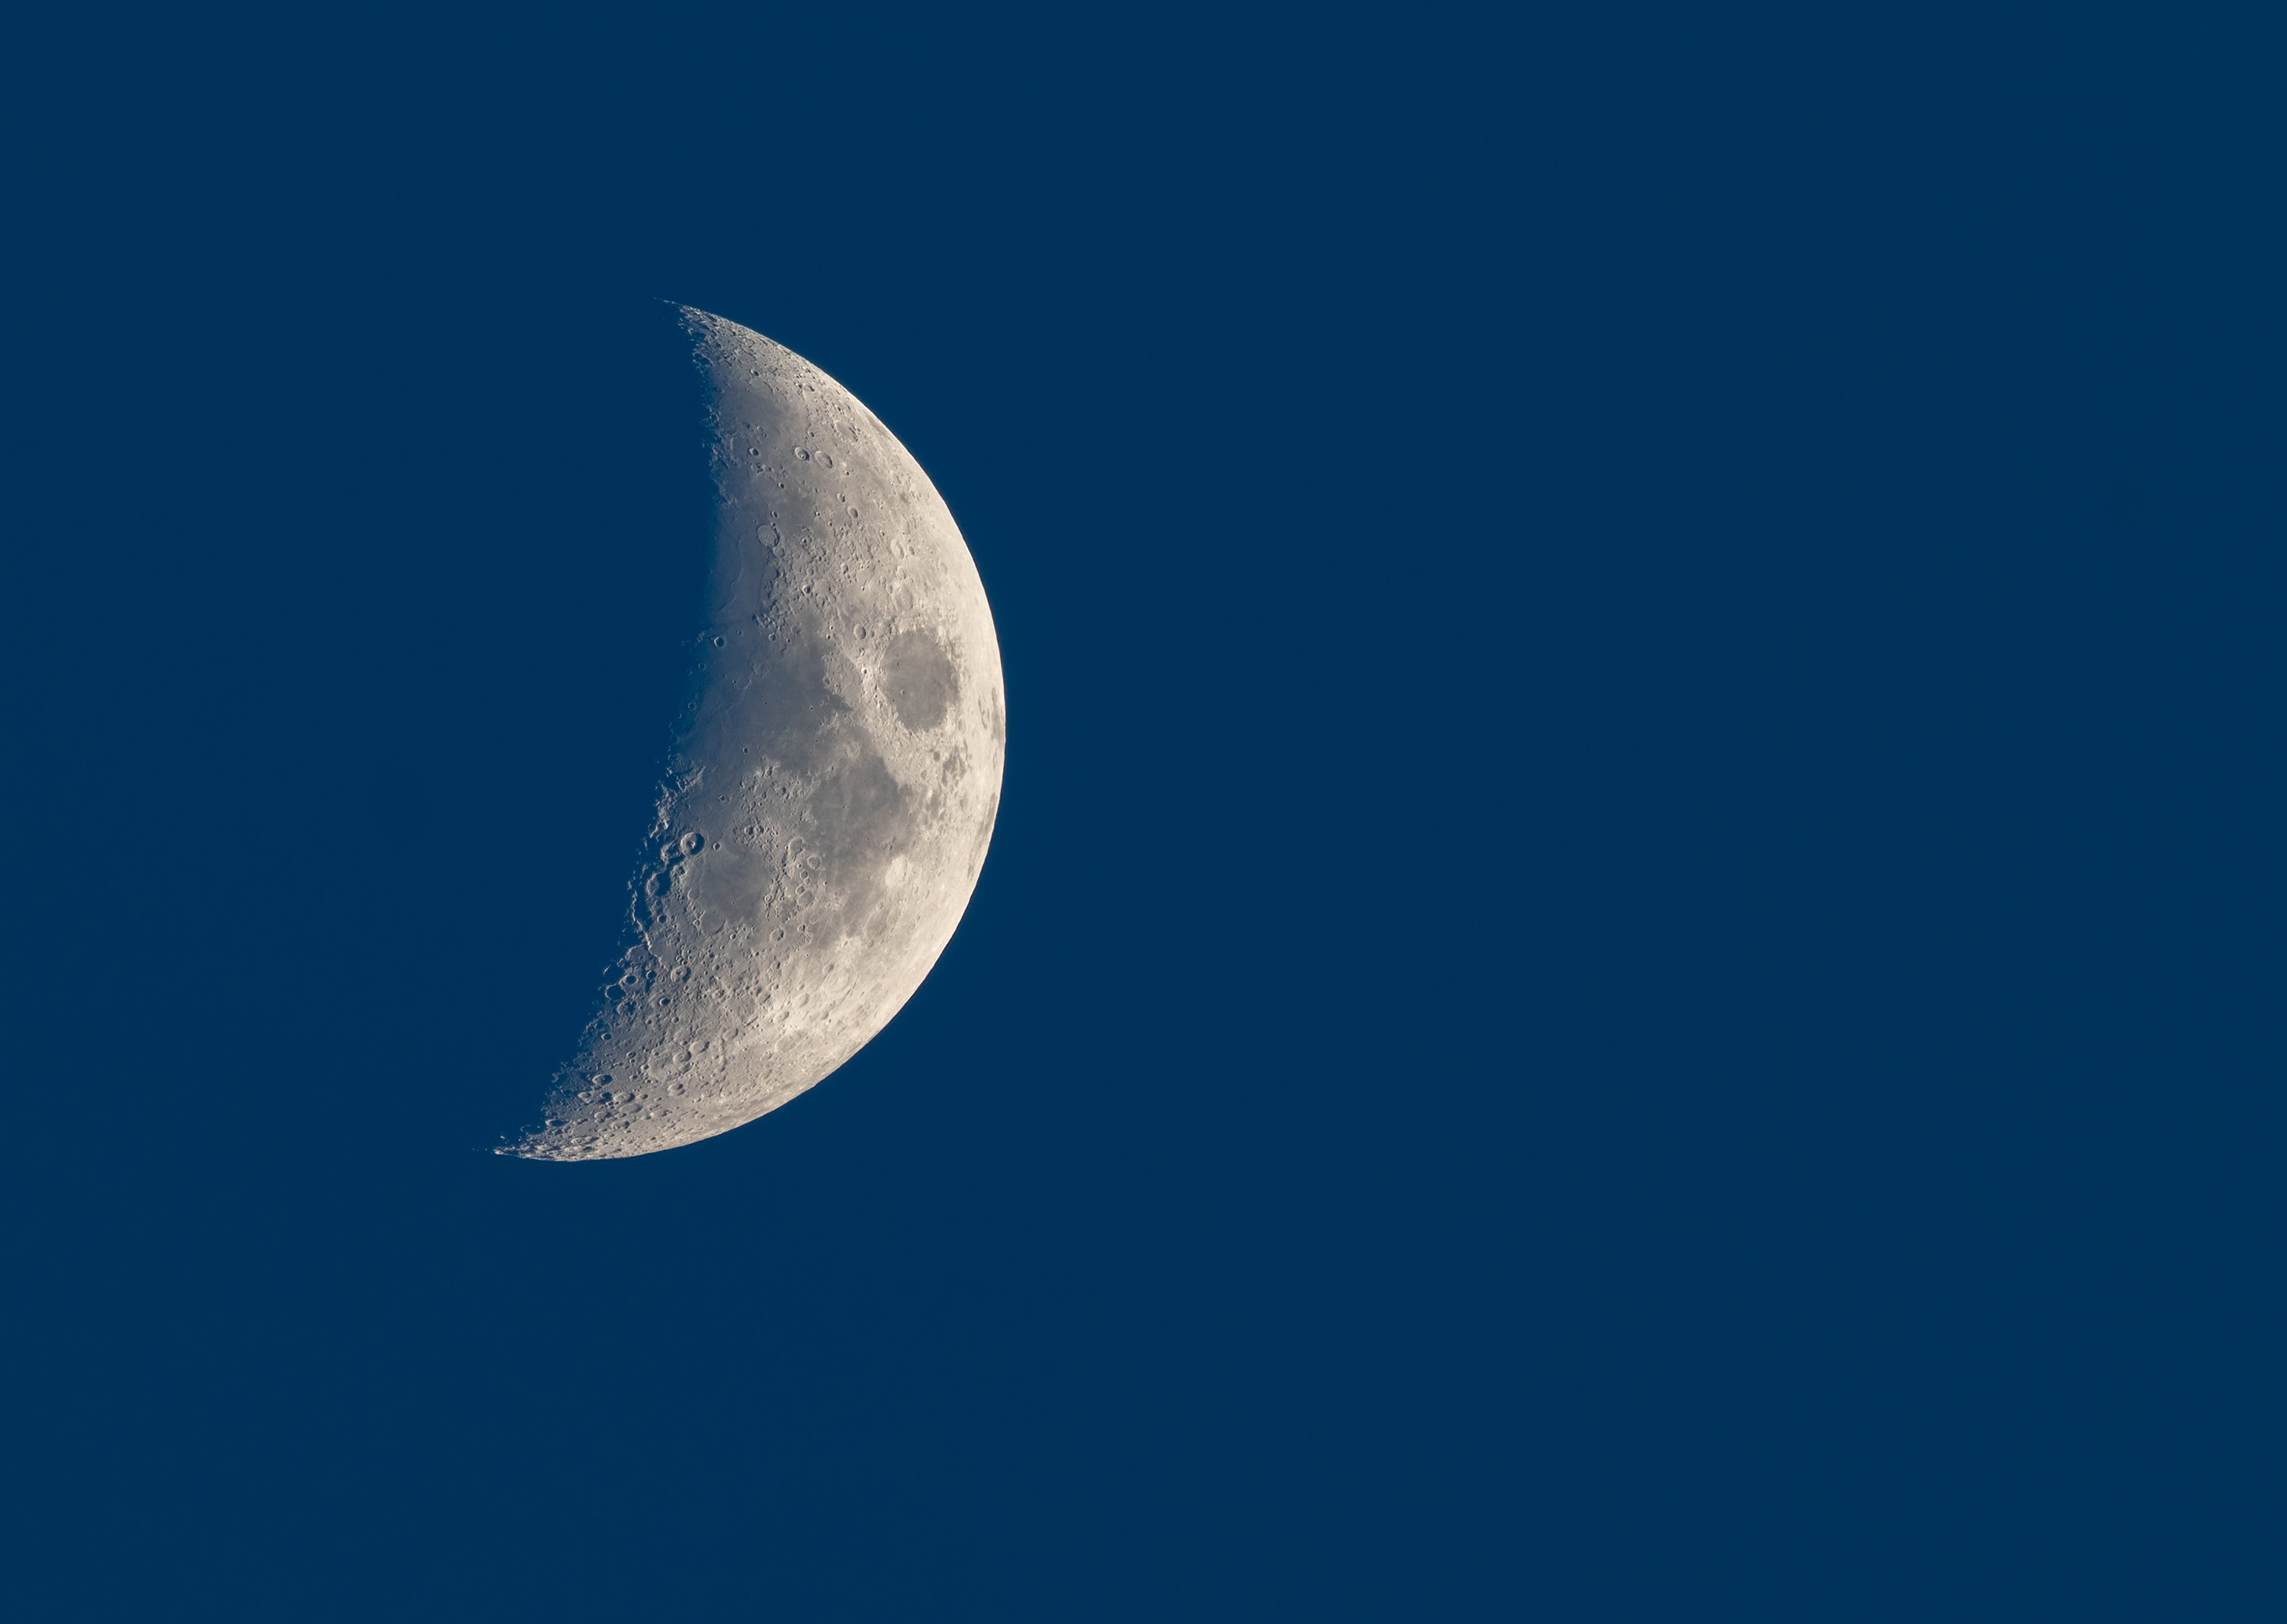 night, moon, dark, evening, craters Image for desktop